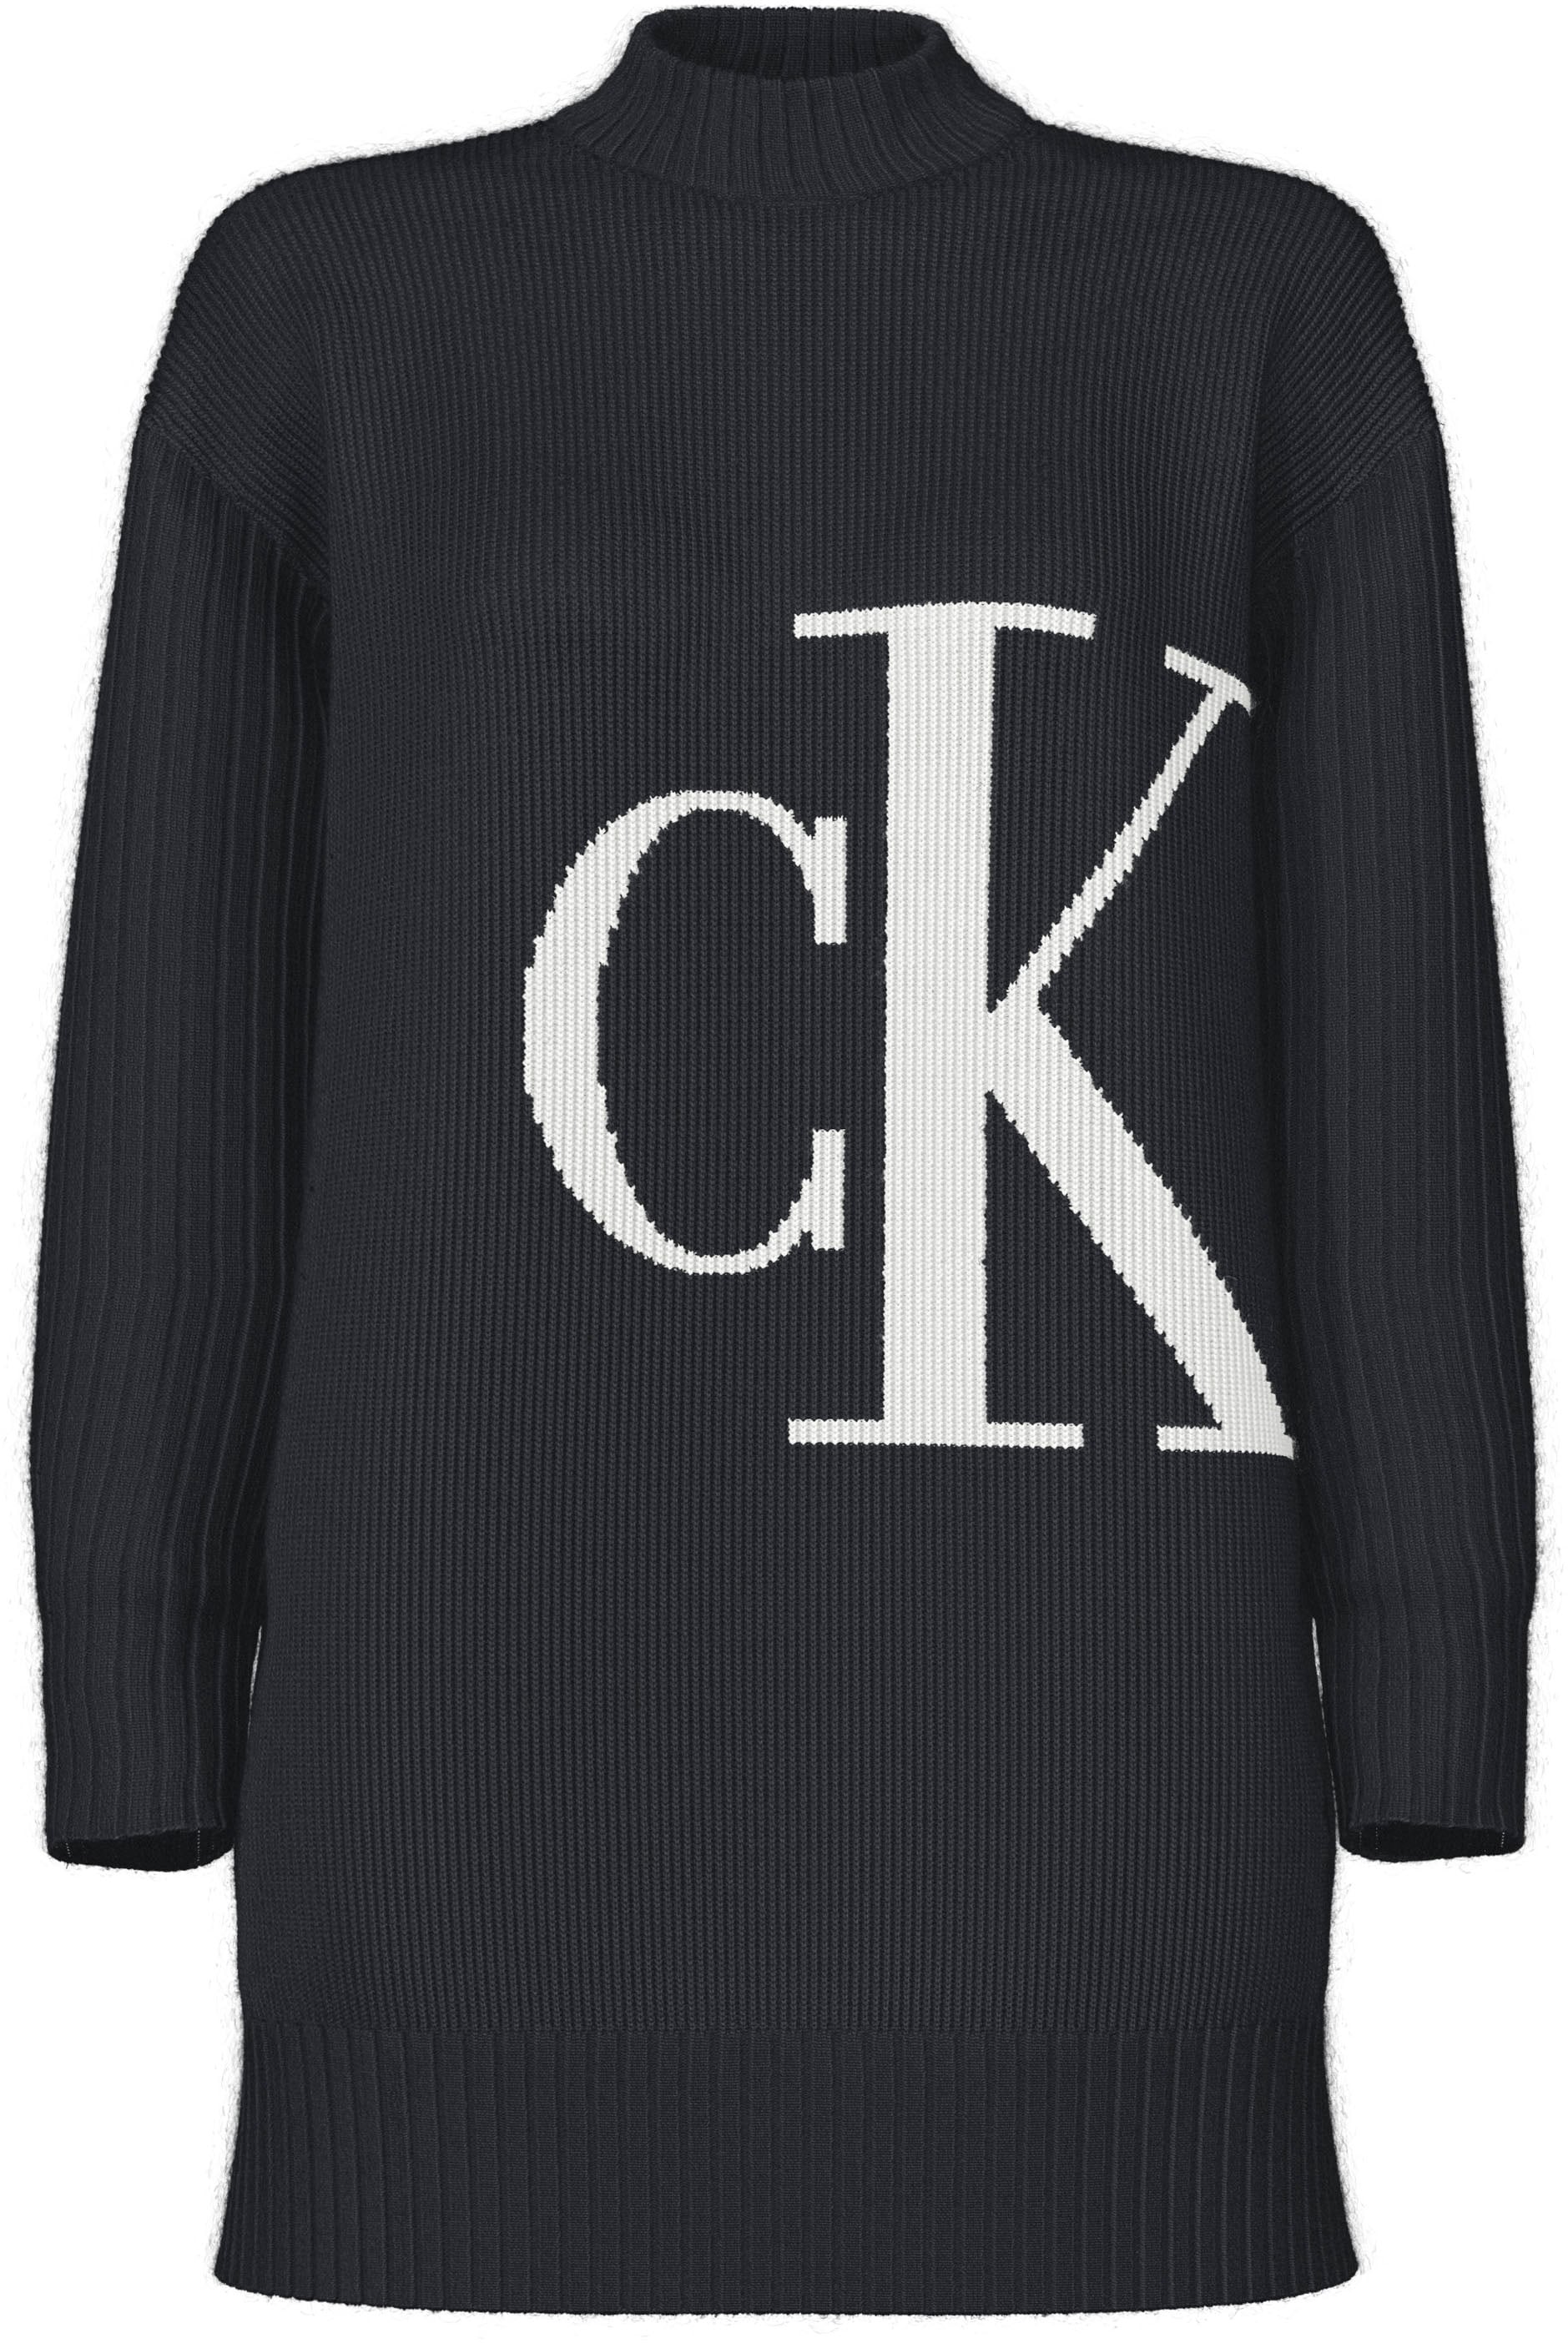 Calvin Klein Jeans Strickpullover »BLOWN UP OFF PLACED CK SWEATER« von Calvin Klein Jeans